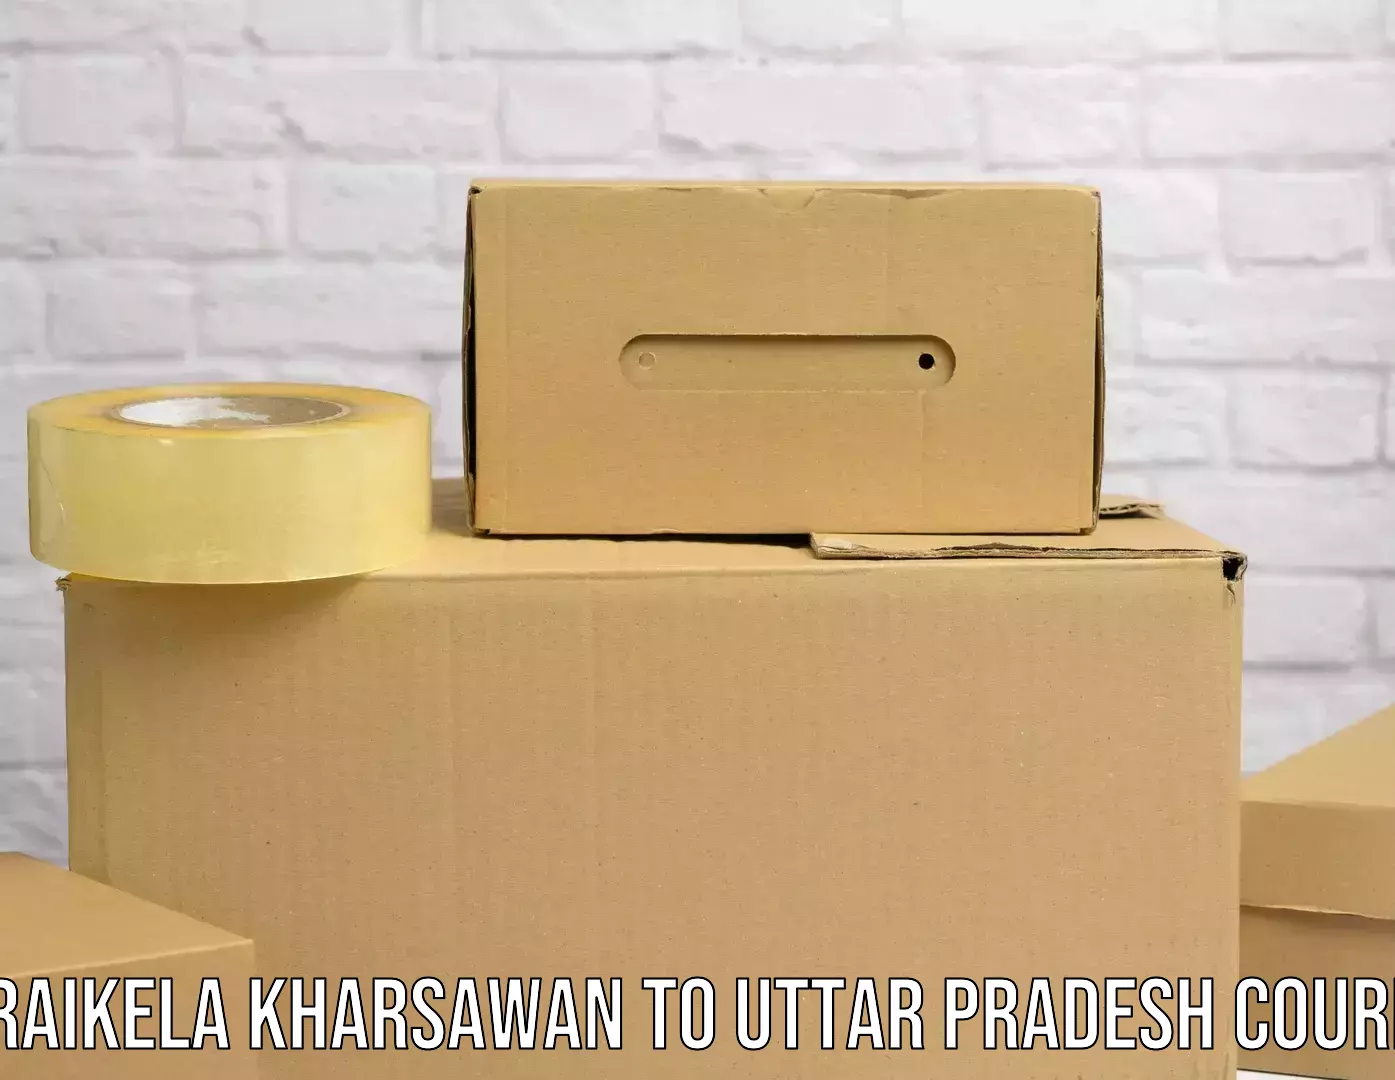 Premium courier solutions Seraikela Kharsawan to Ayodhya